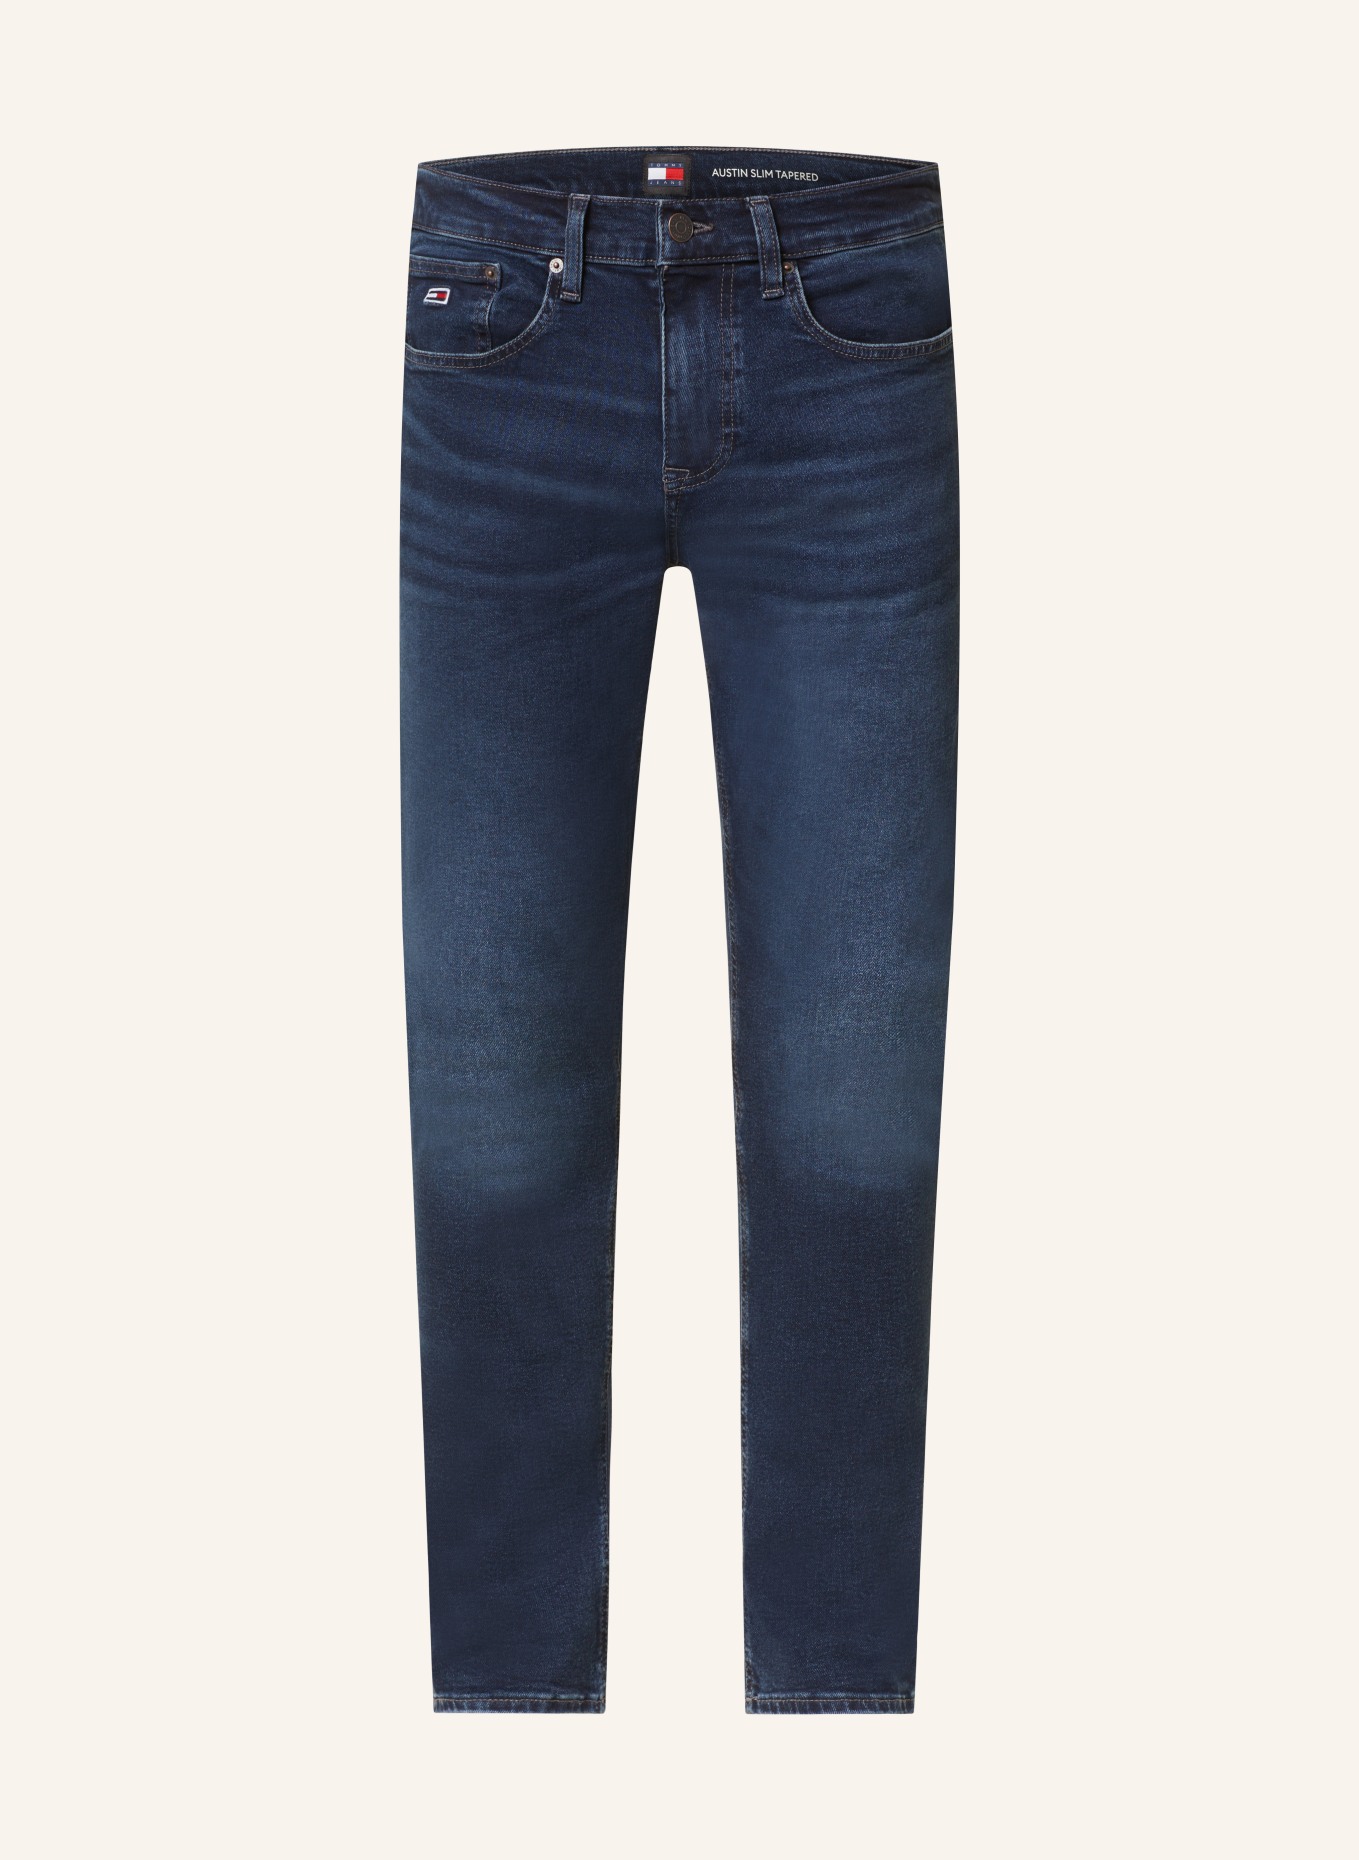 TOMMY JEANS Jeans AUSTIN slim tapered fit, Color: 1BK Denim Dark (Image 1)